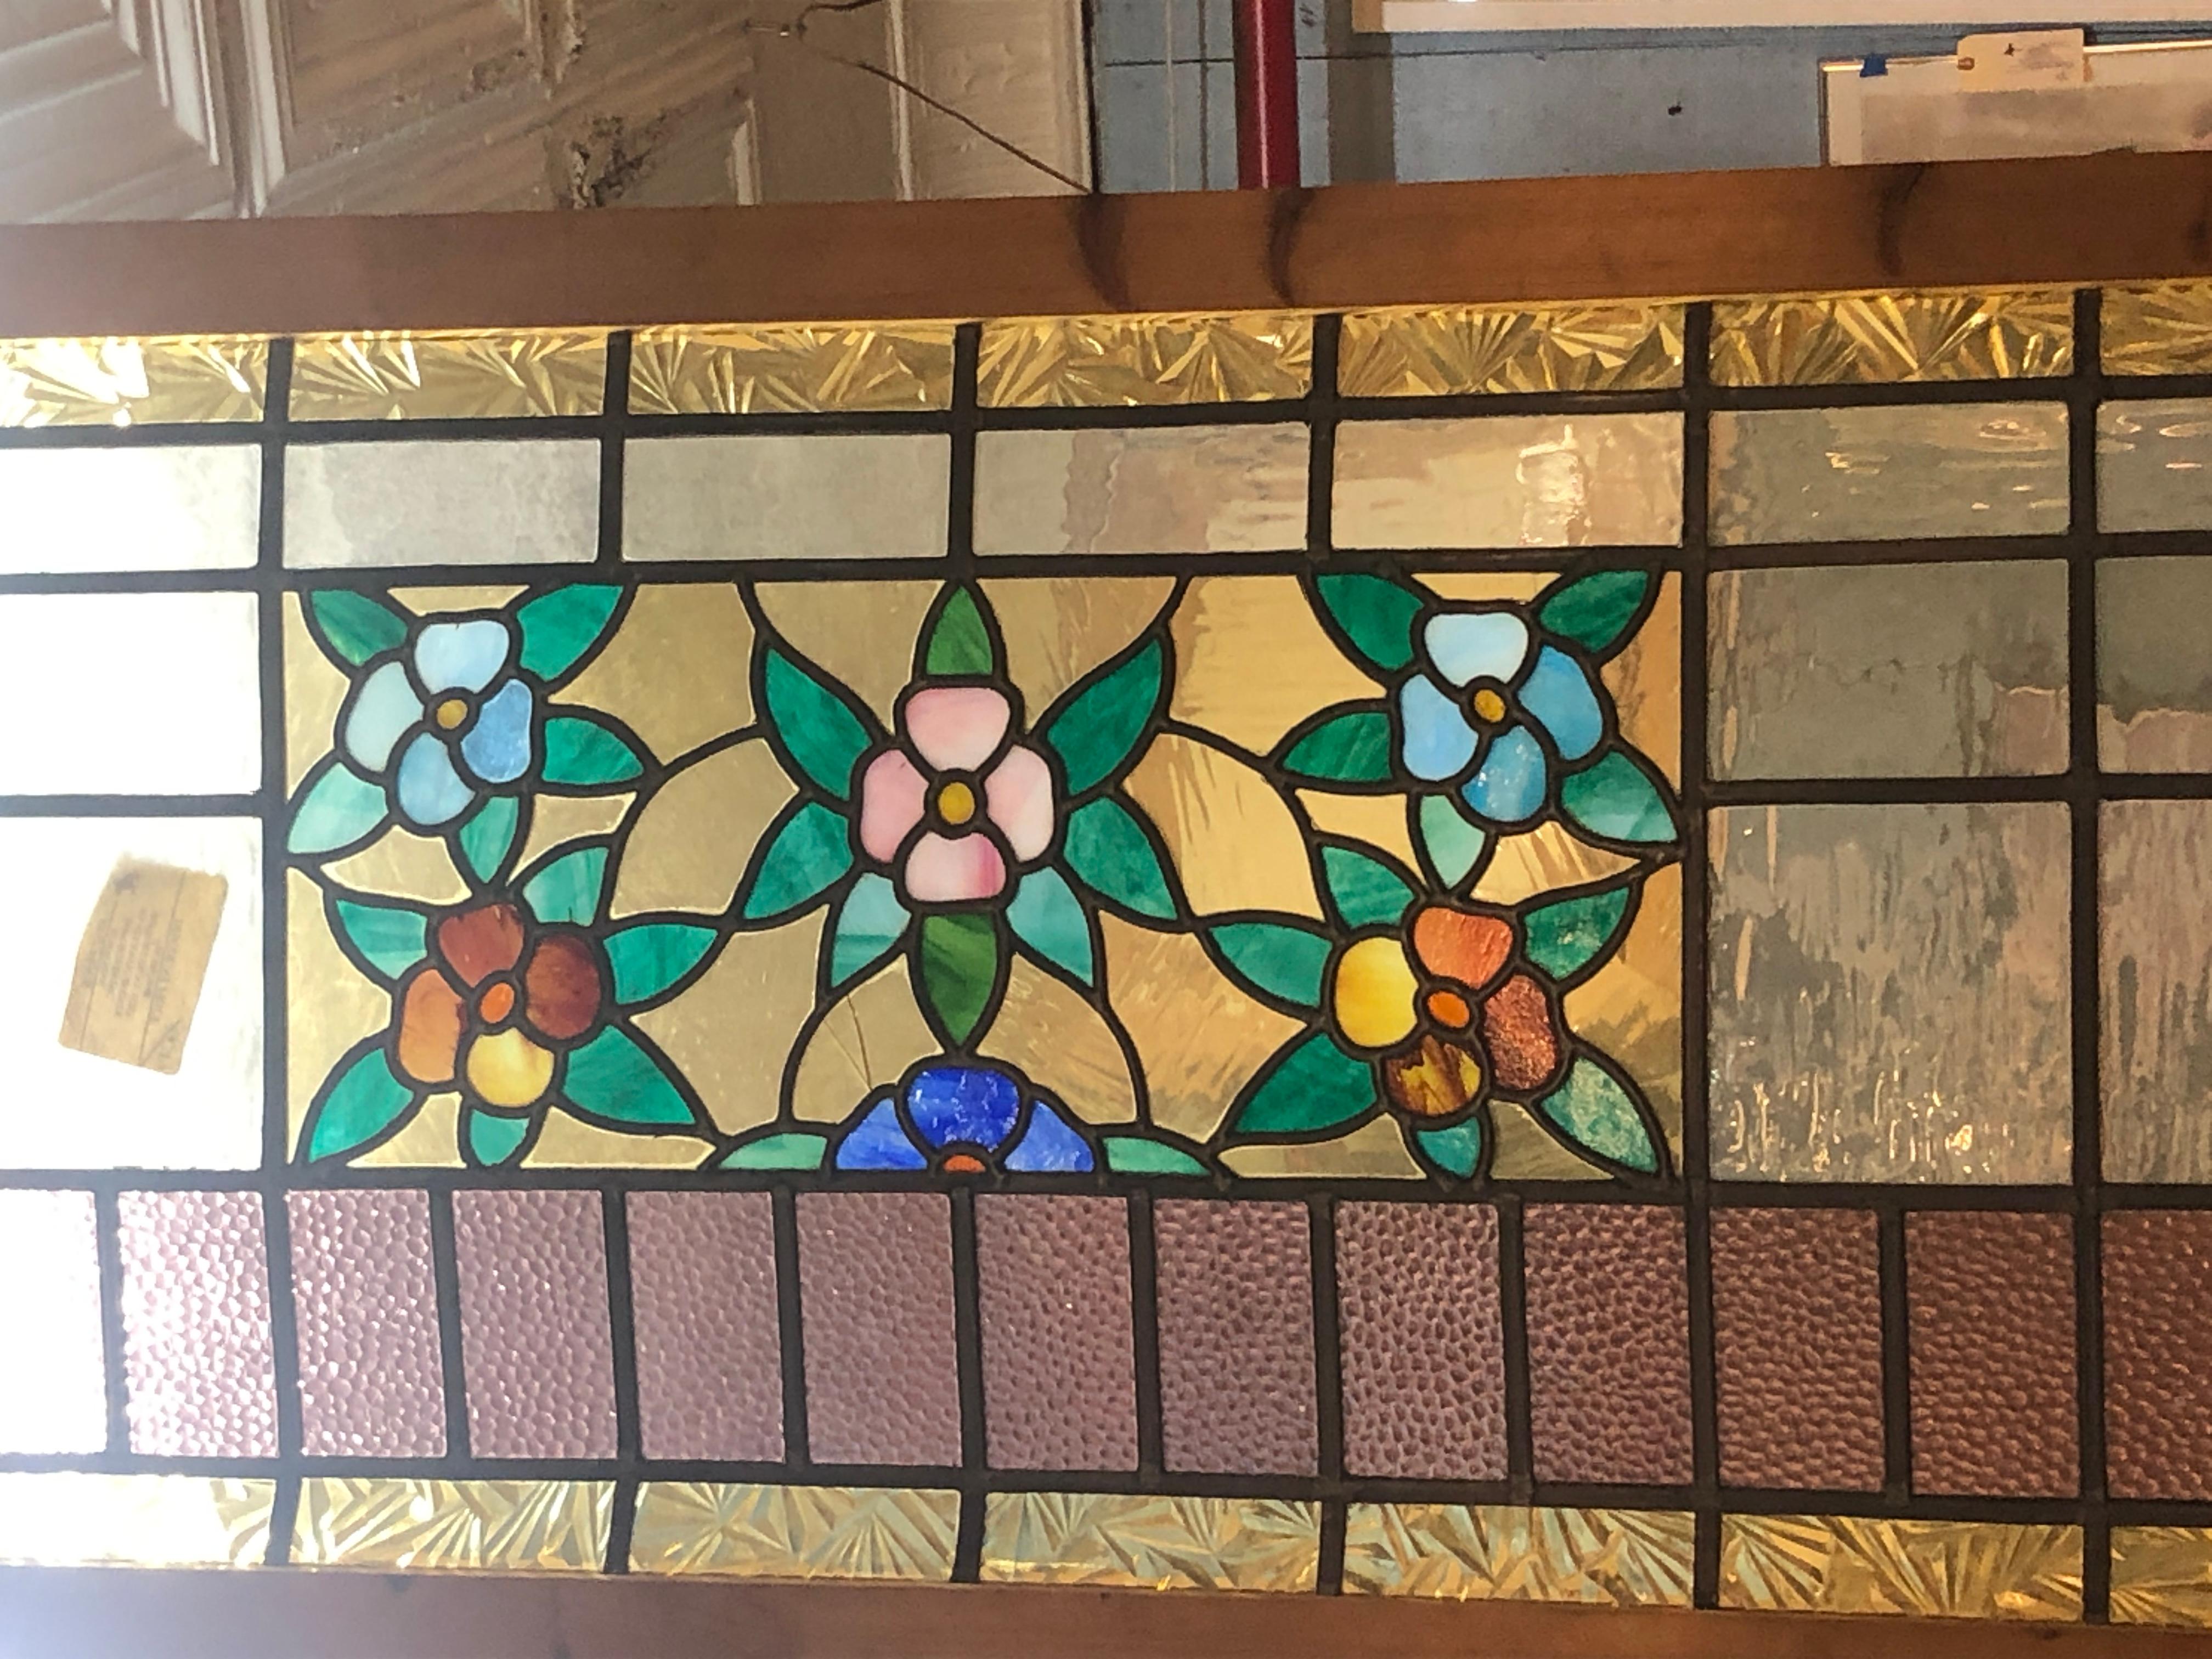 Amerikanische Glasmalerei aus der Jahrhundertwende mit wunderschönem Blumenmuster.
Derzeit in einem provisorischen Holzrahmen untergebracht - die Gesamtmaße gelten für die Glasmalerei und den Rahmen.
Sitz in NY